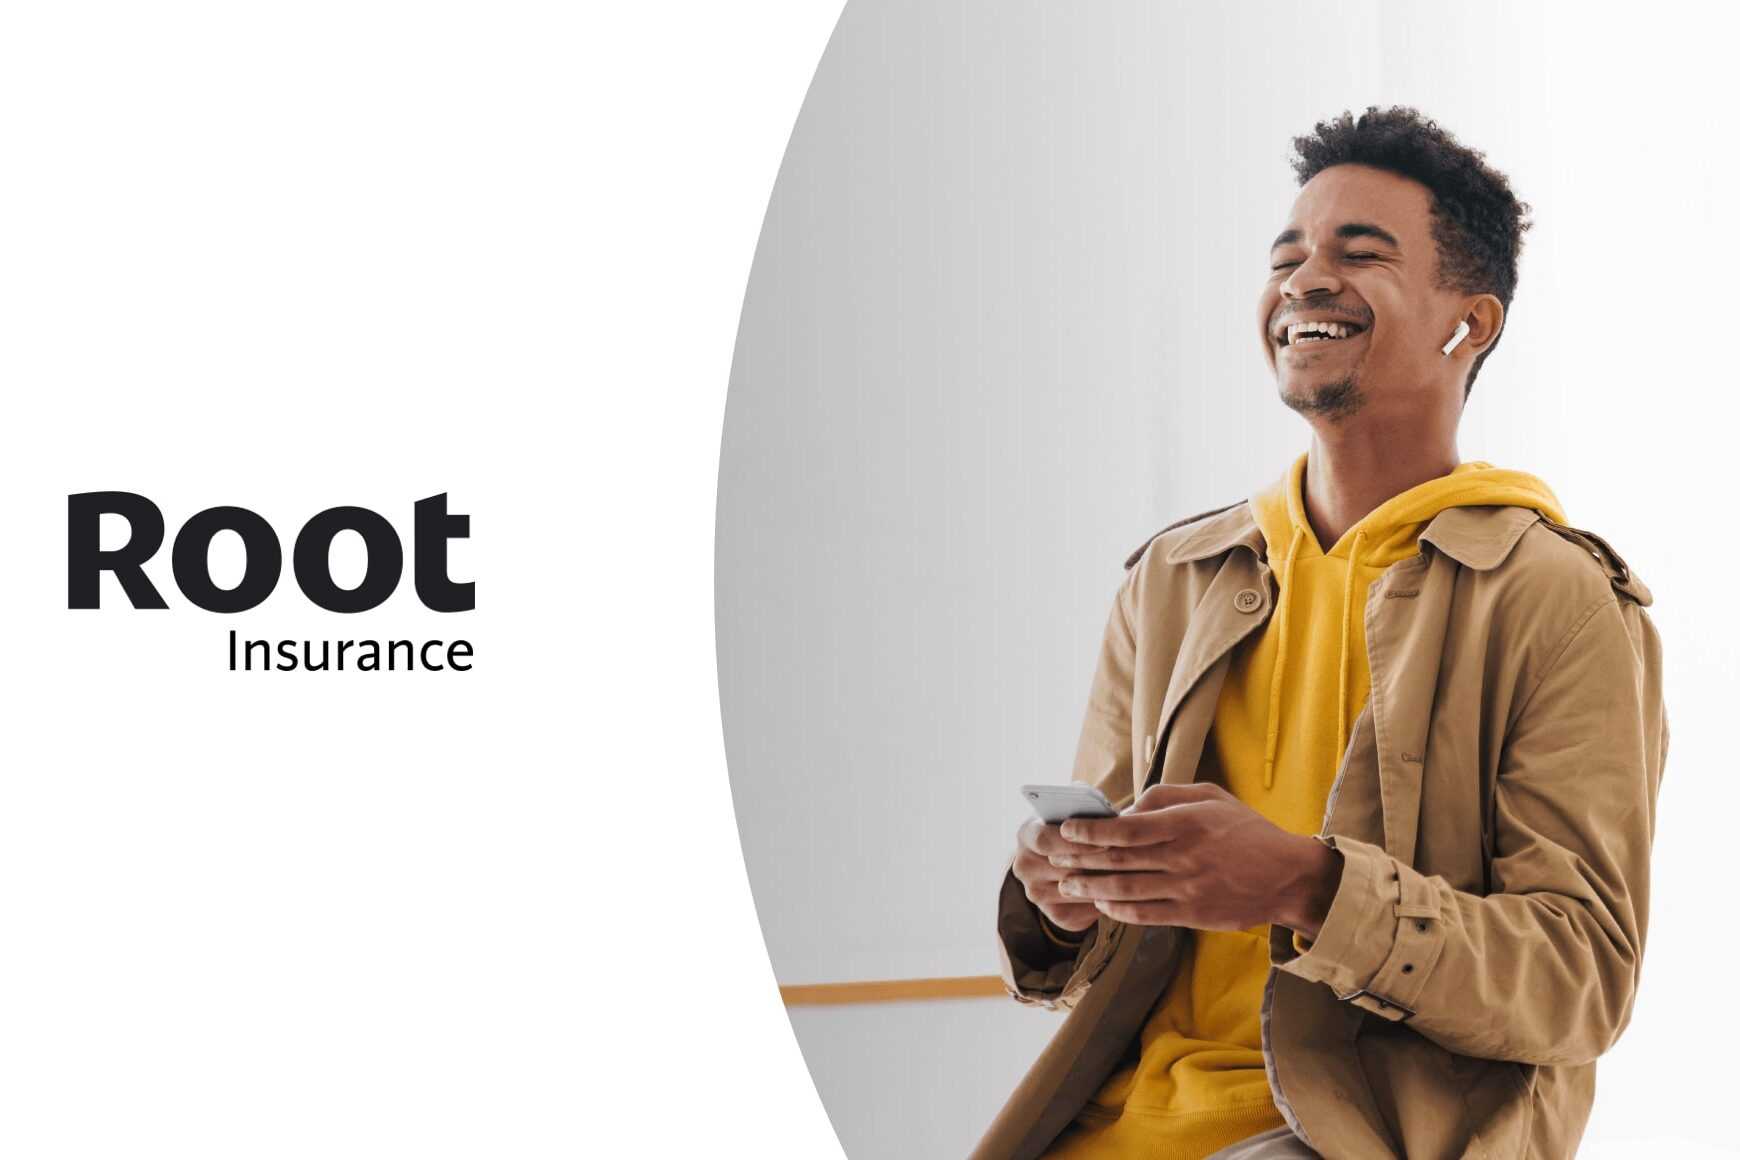 Vea cómo Root Insurance está revolucionando la CX con Talkdesk.